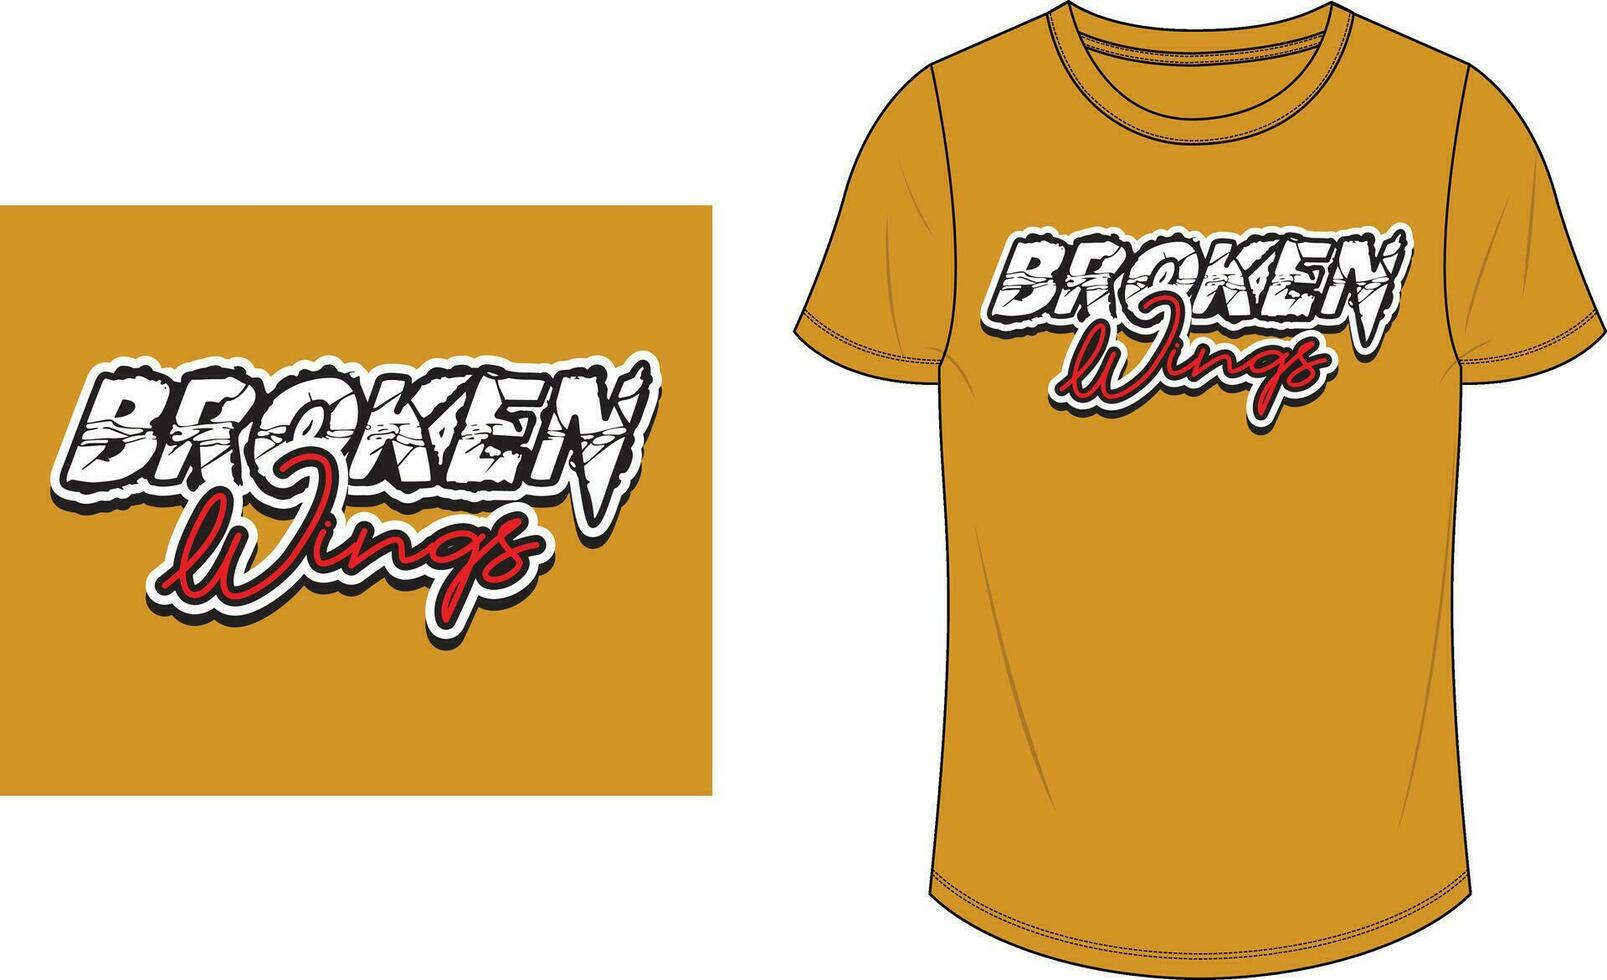 Broken wings t shirt design men's vector